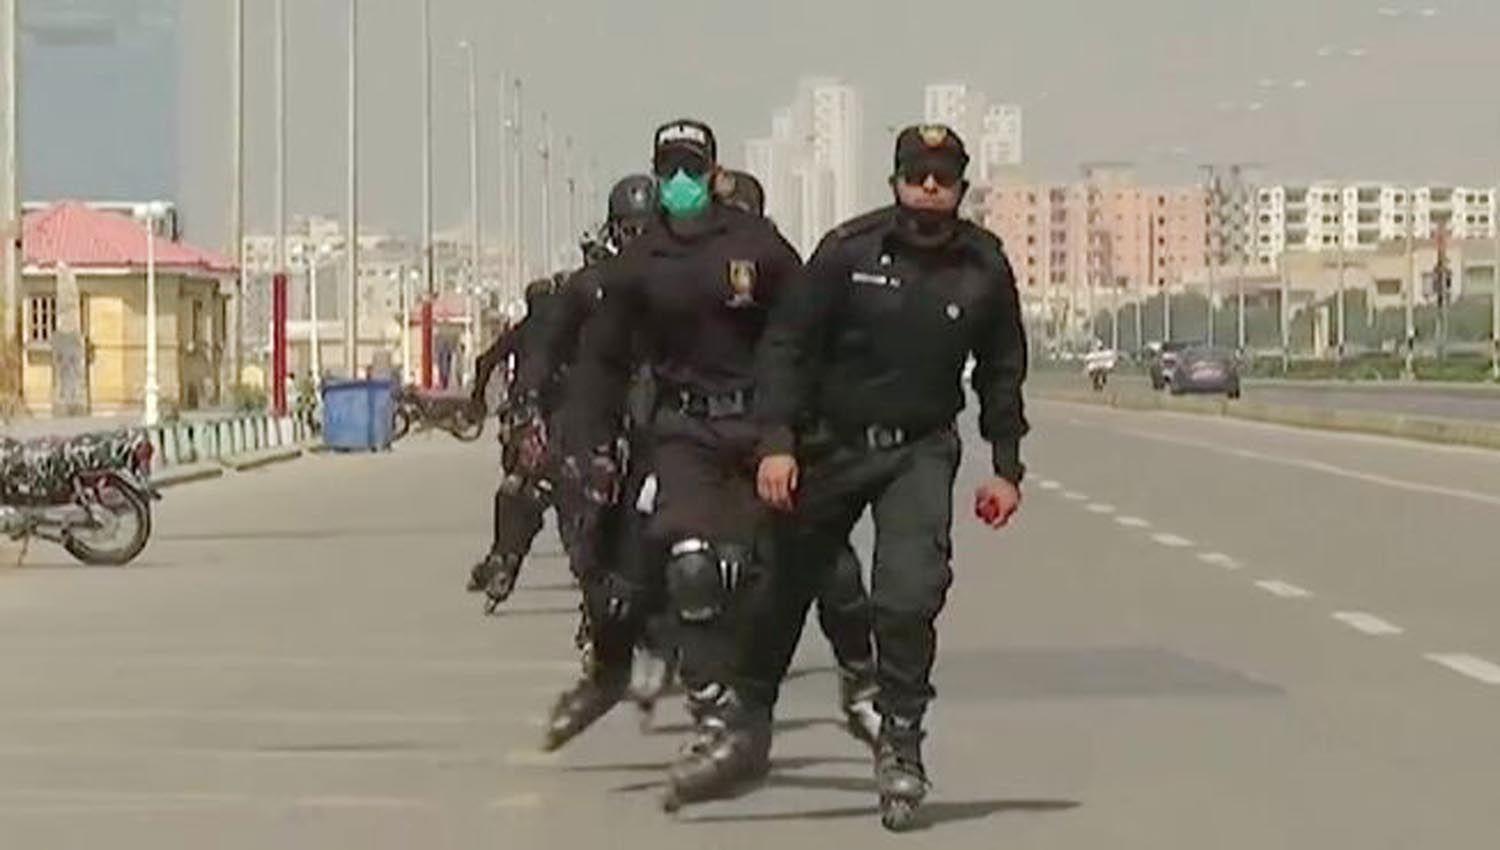 VIDEO  La policiacutea armada en patines nueva unidad en Pakistaacuten